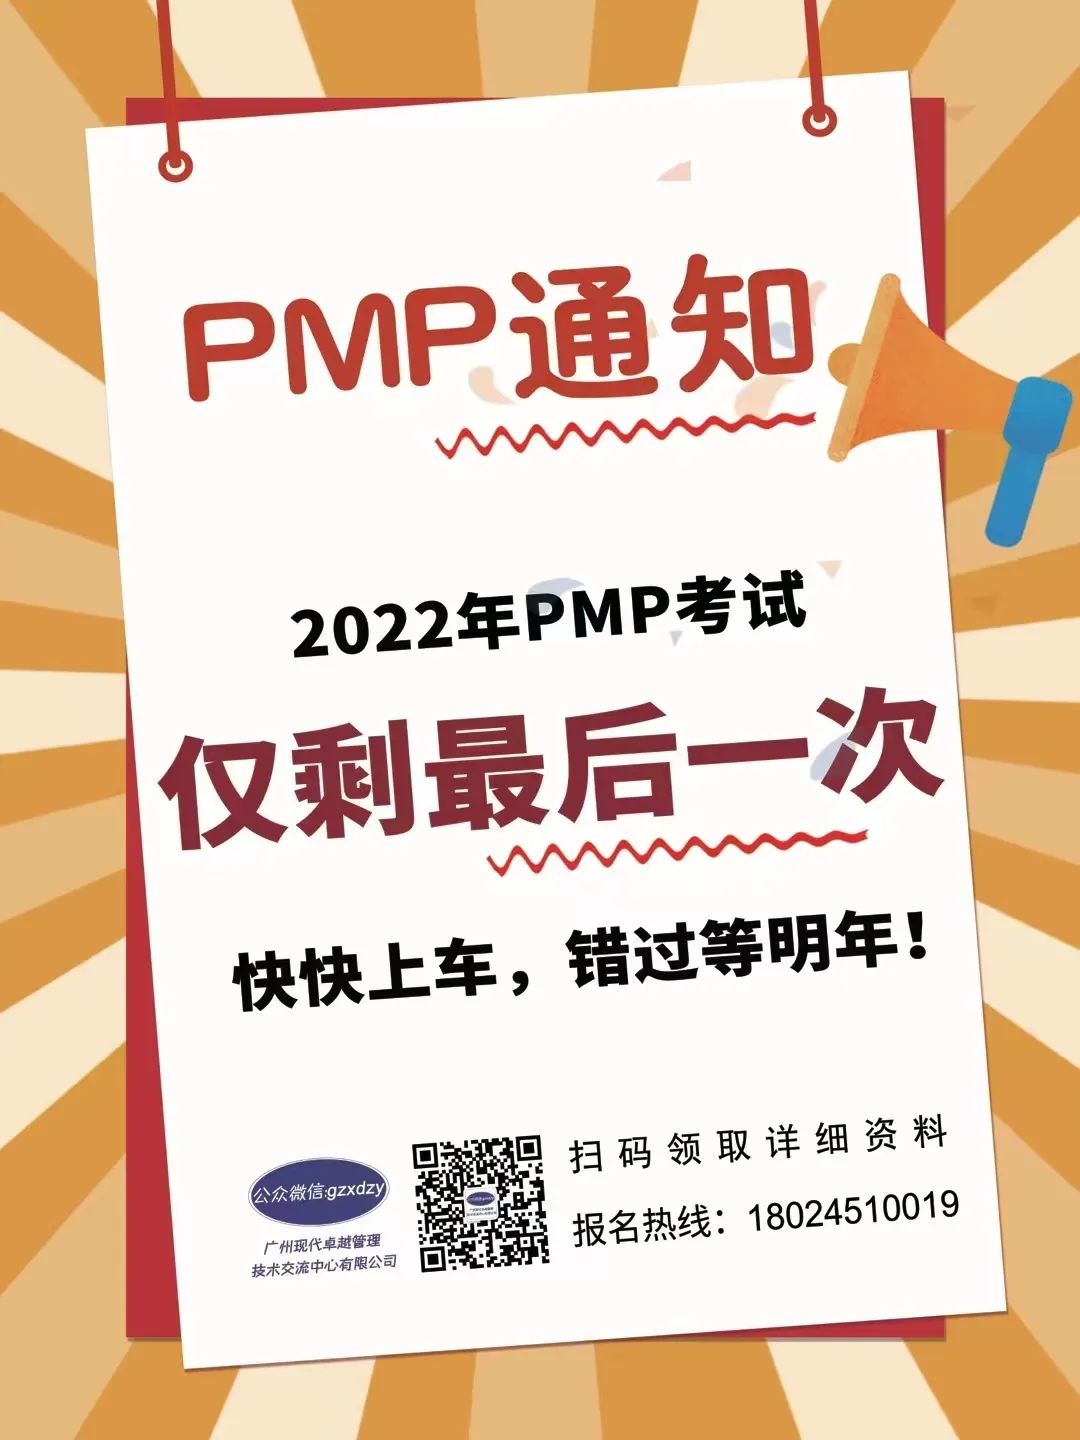 北京和珠海地区PMP认证考试暂定于2022年8月28日举办